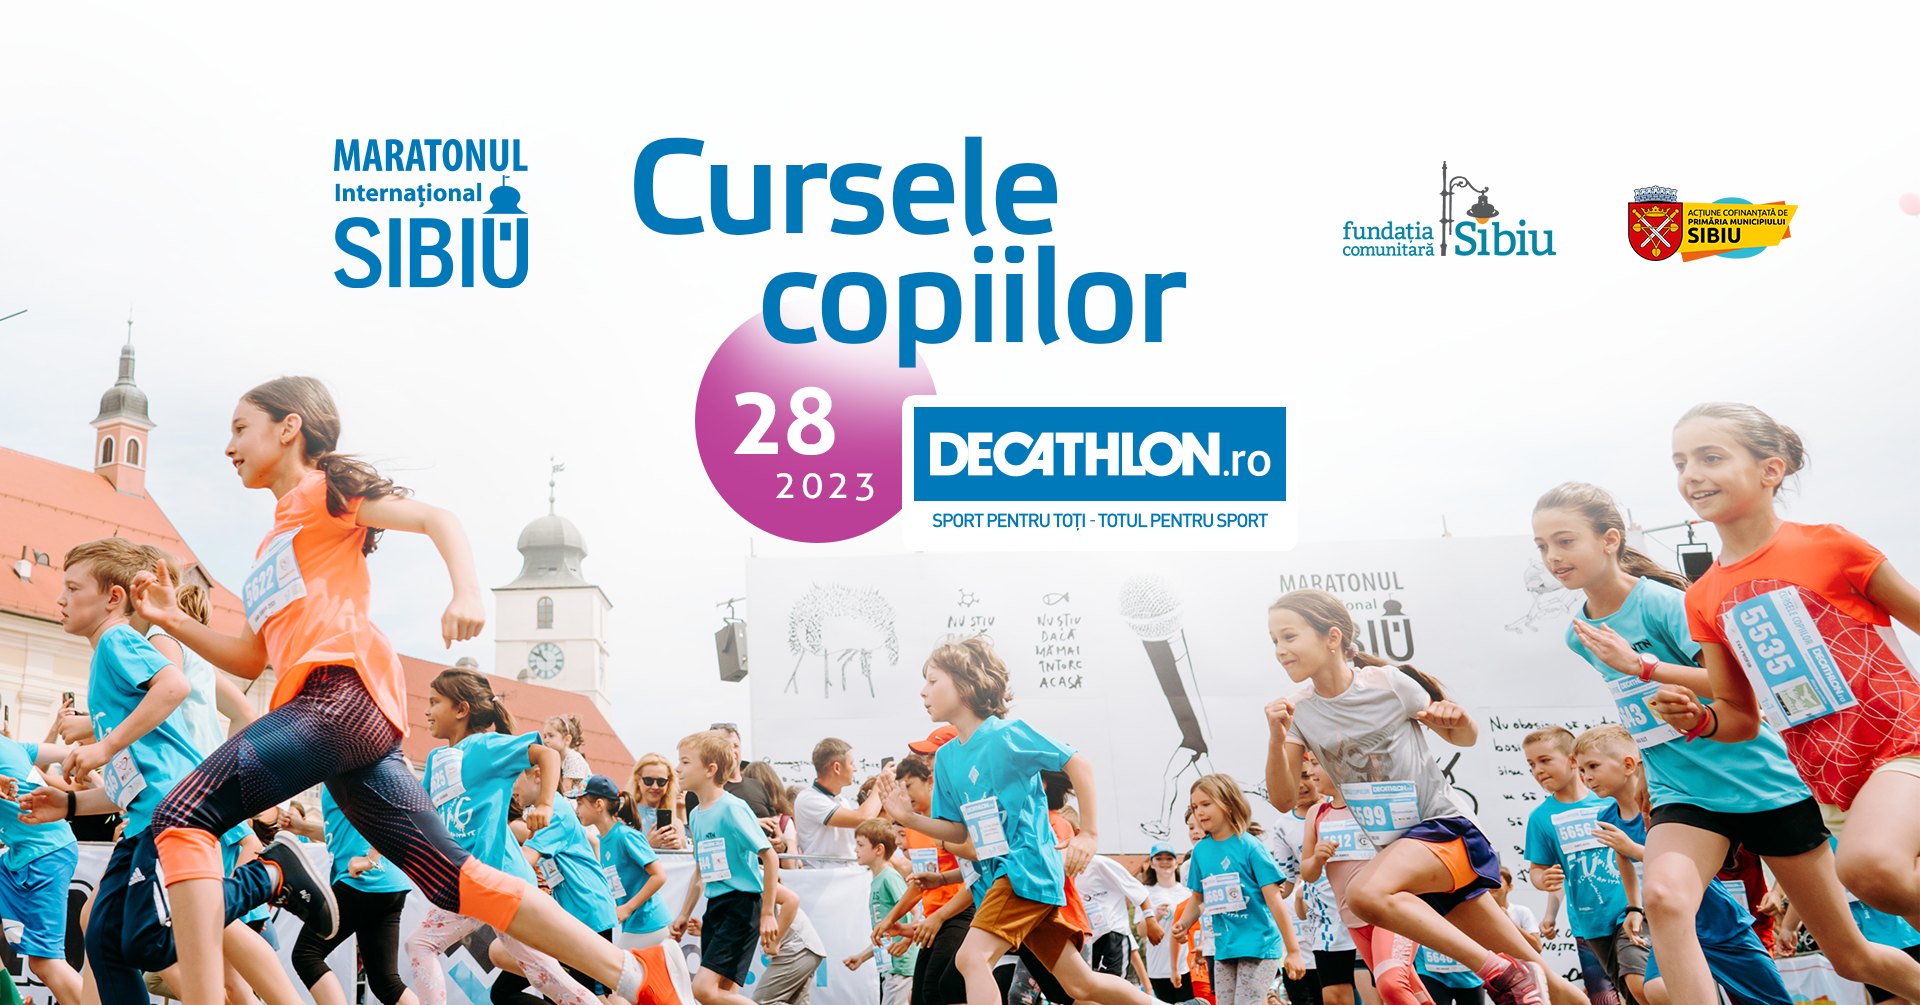 Maratonul Internațional Sibiu 2023: Cursele Copiilor Decathlon